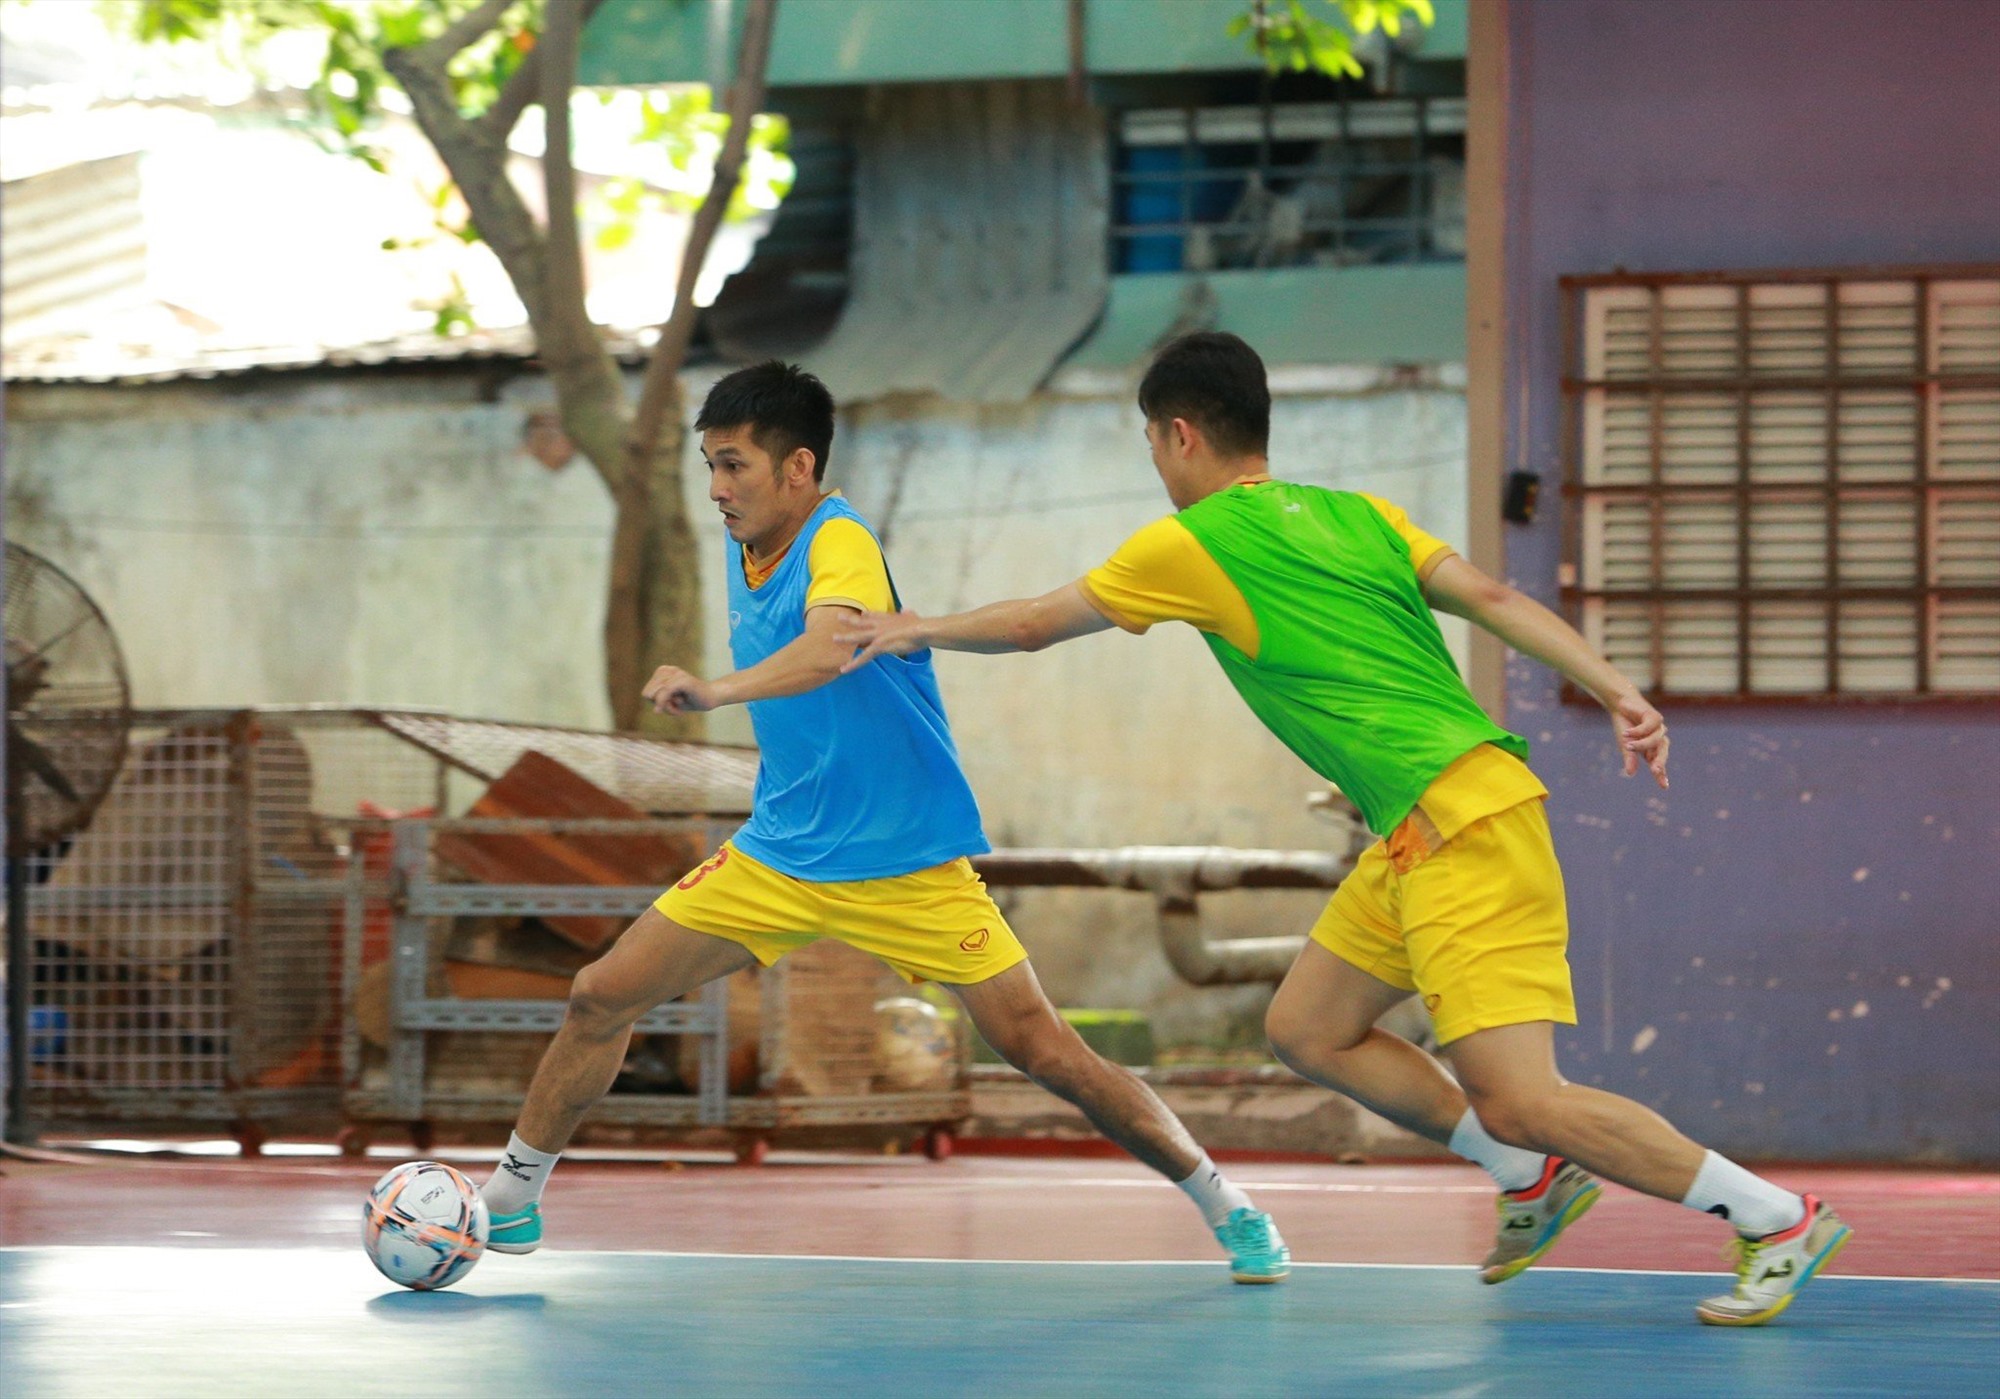 Hai trận giao hữu sắp tới đây được xem là bài kiểm tra chất lượng cho đội tuyển futsal Việt Nam trước khi bước vào chinh phục tấm vé dự vòng chung kết giải futsal châu Á 2024.